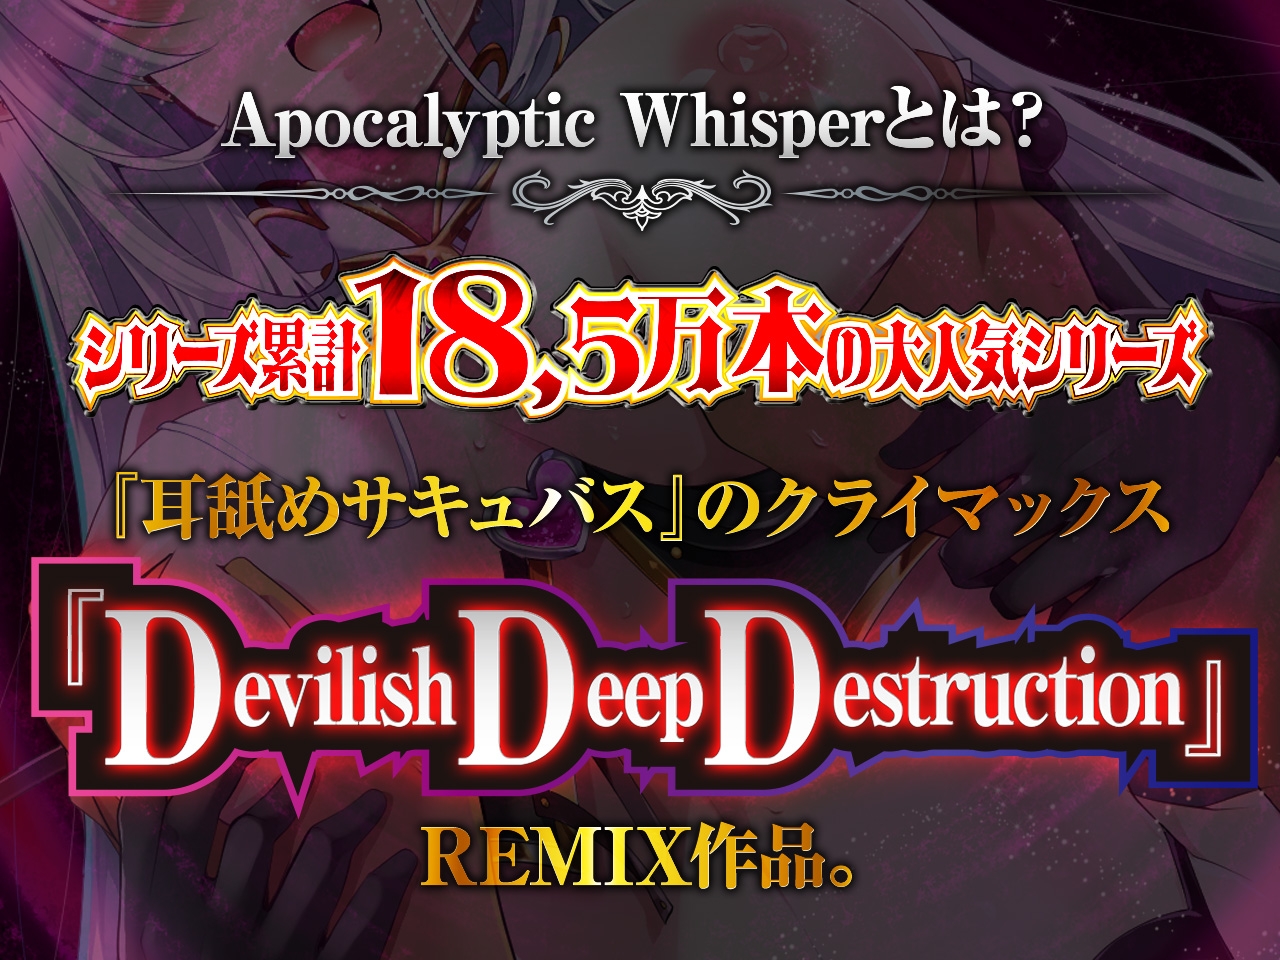 【耳舐めサキュバス】Apocalyptic Whisper -DDD Remix アルマ vs リリア-【脳がバグるほど気持ちいい耳舐め】【1h 4m 3s】 [HORNET]